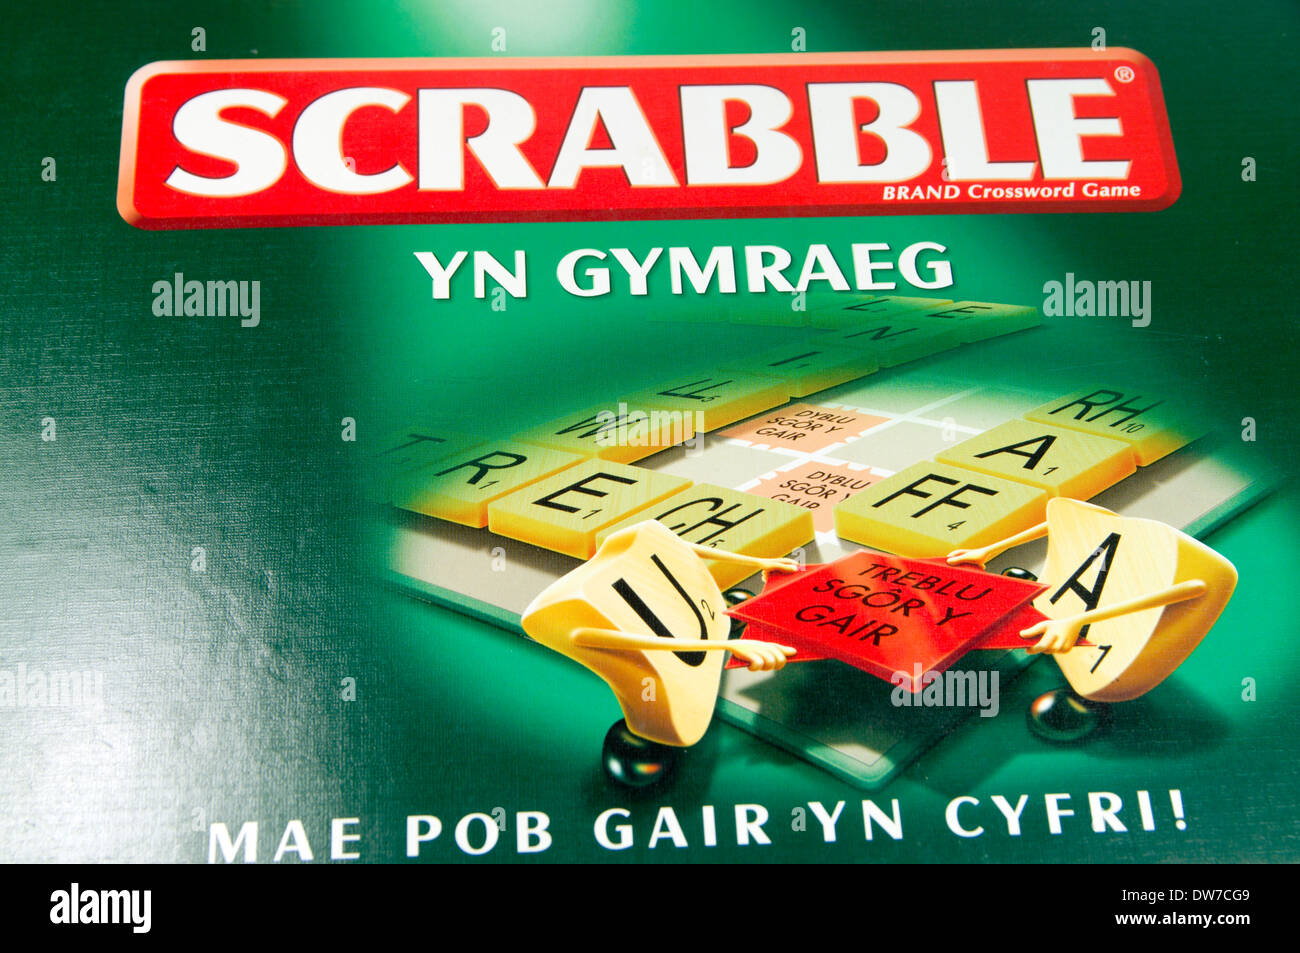 Die walisische Sprachversion von Scrabble Brettspiel. Stockfoto